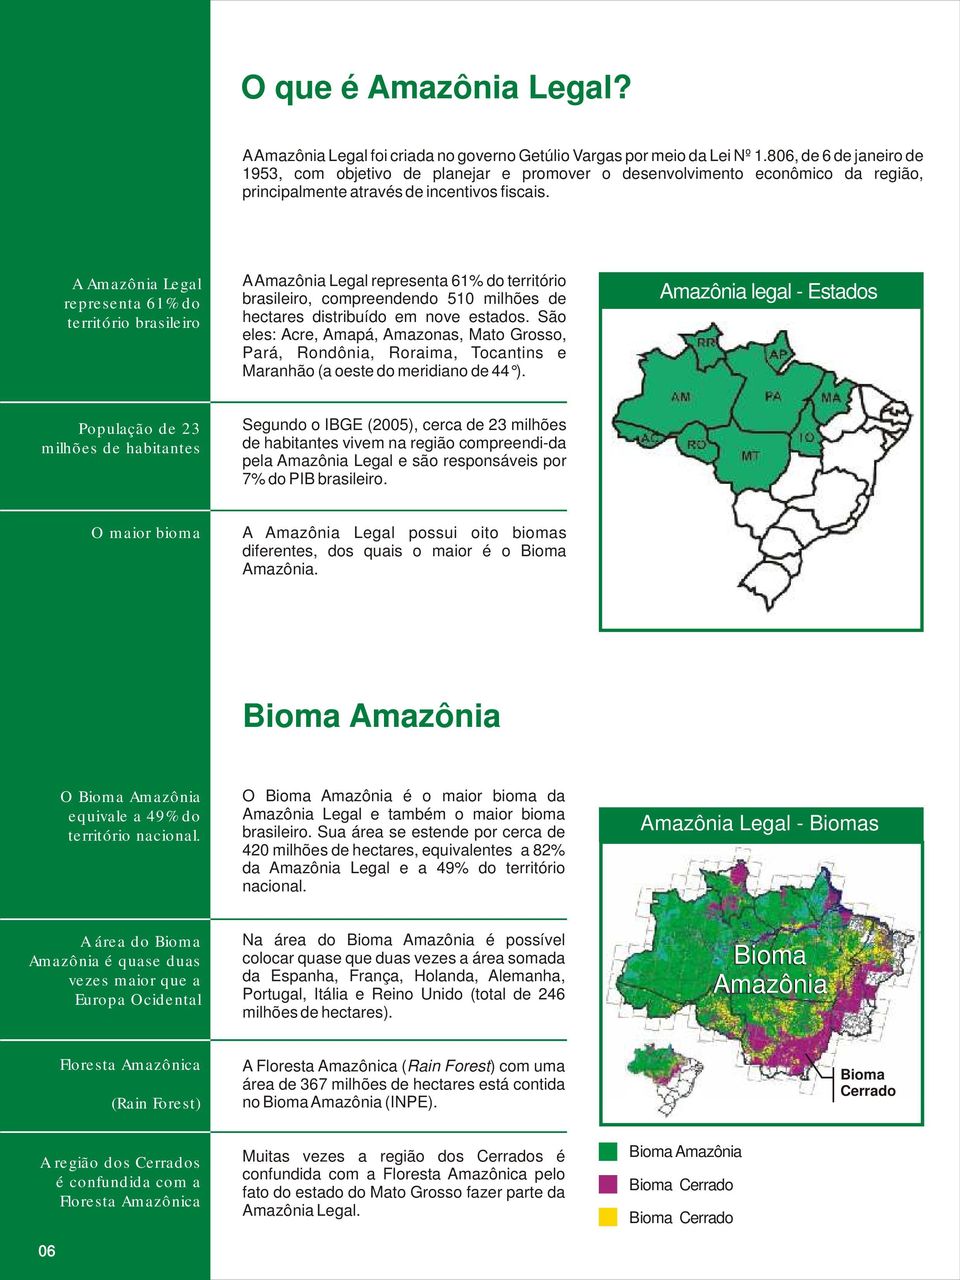 A Amazônia Legal representa 61% do território brasileiro A Amazônia Legal representa 61% do território brasileiro, compreendendo 510 milhões de hectares distribuído em nove estados.